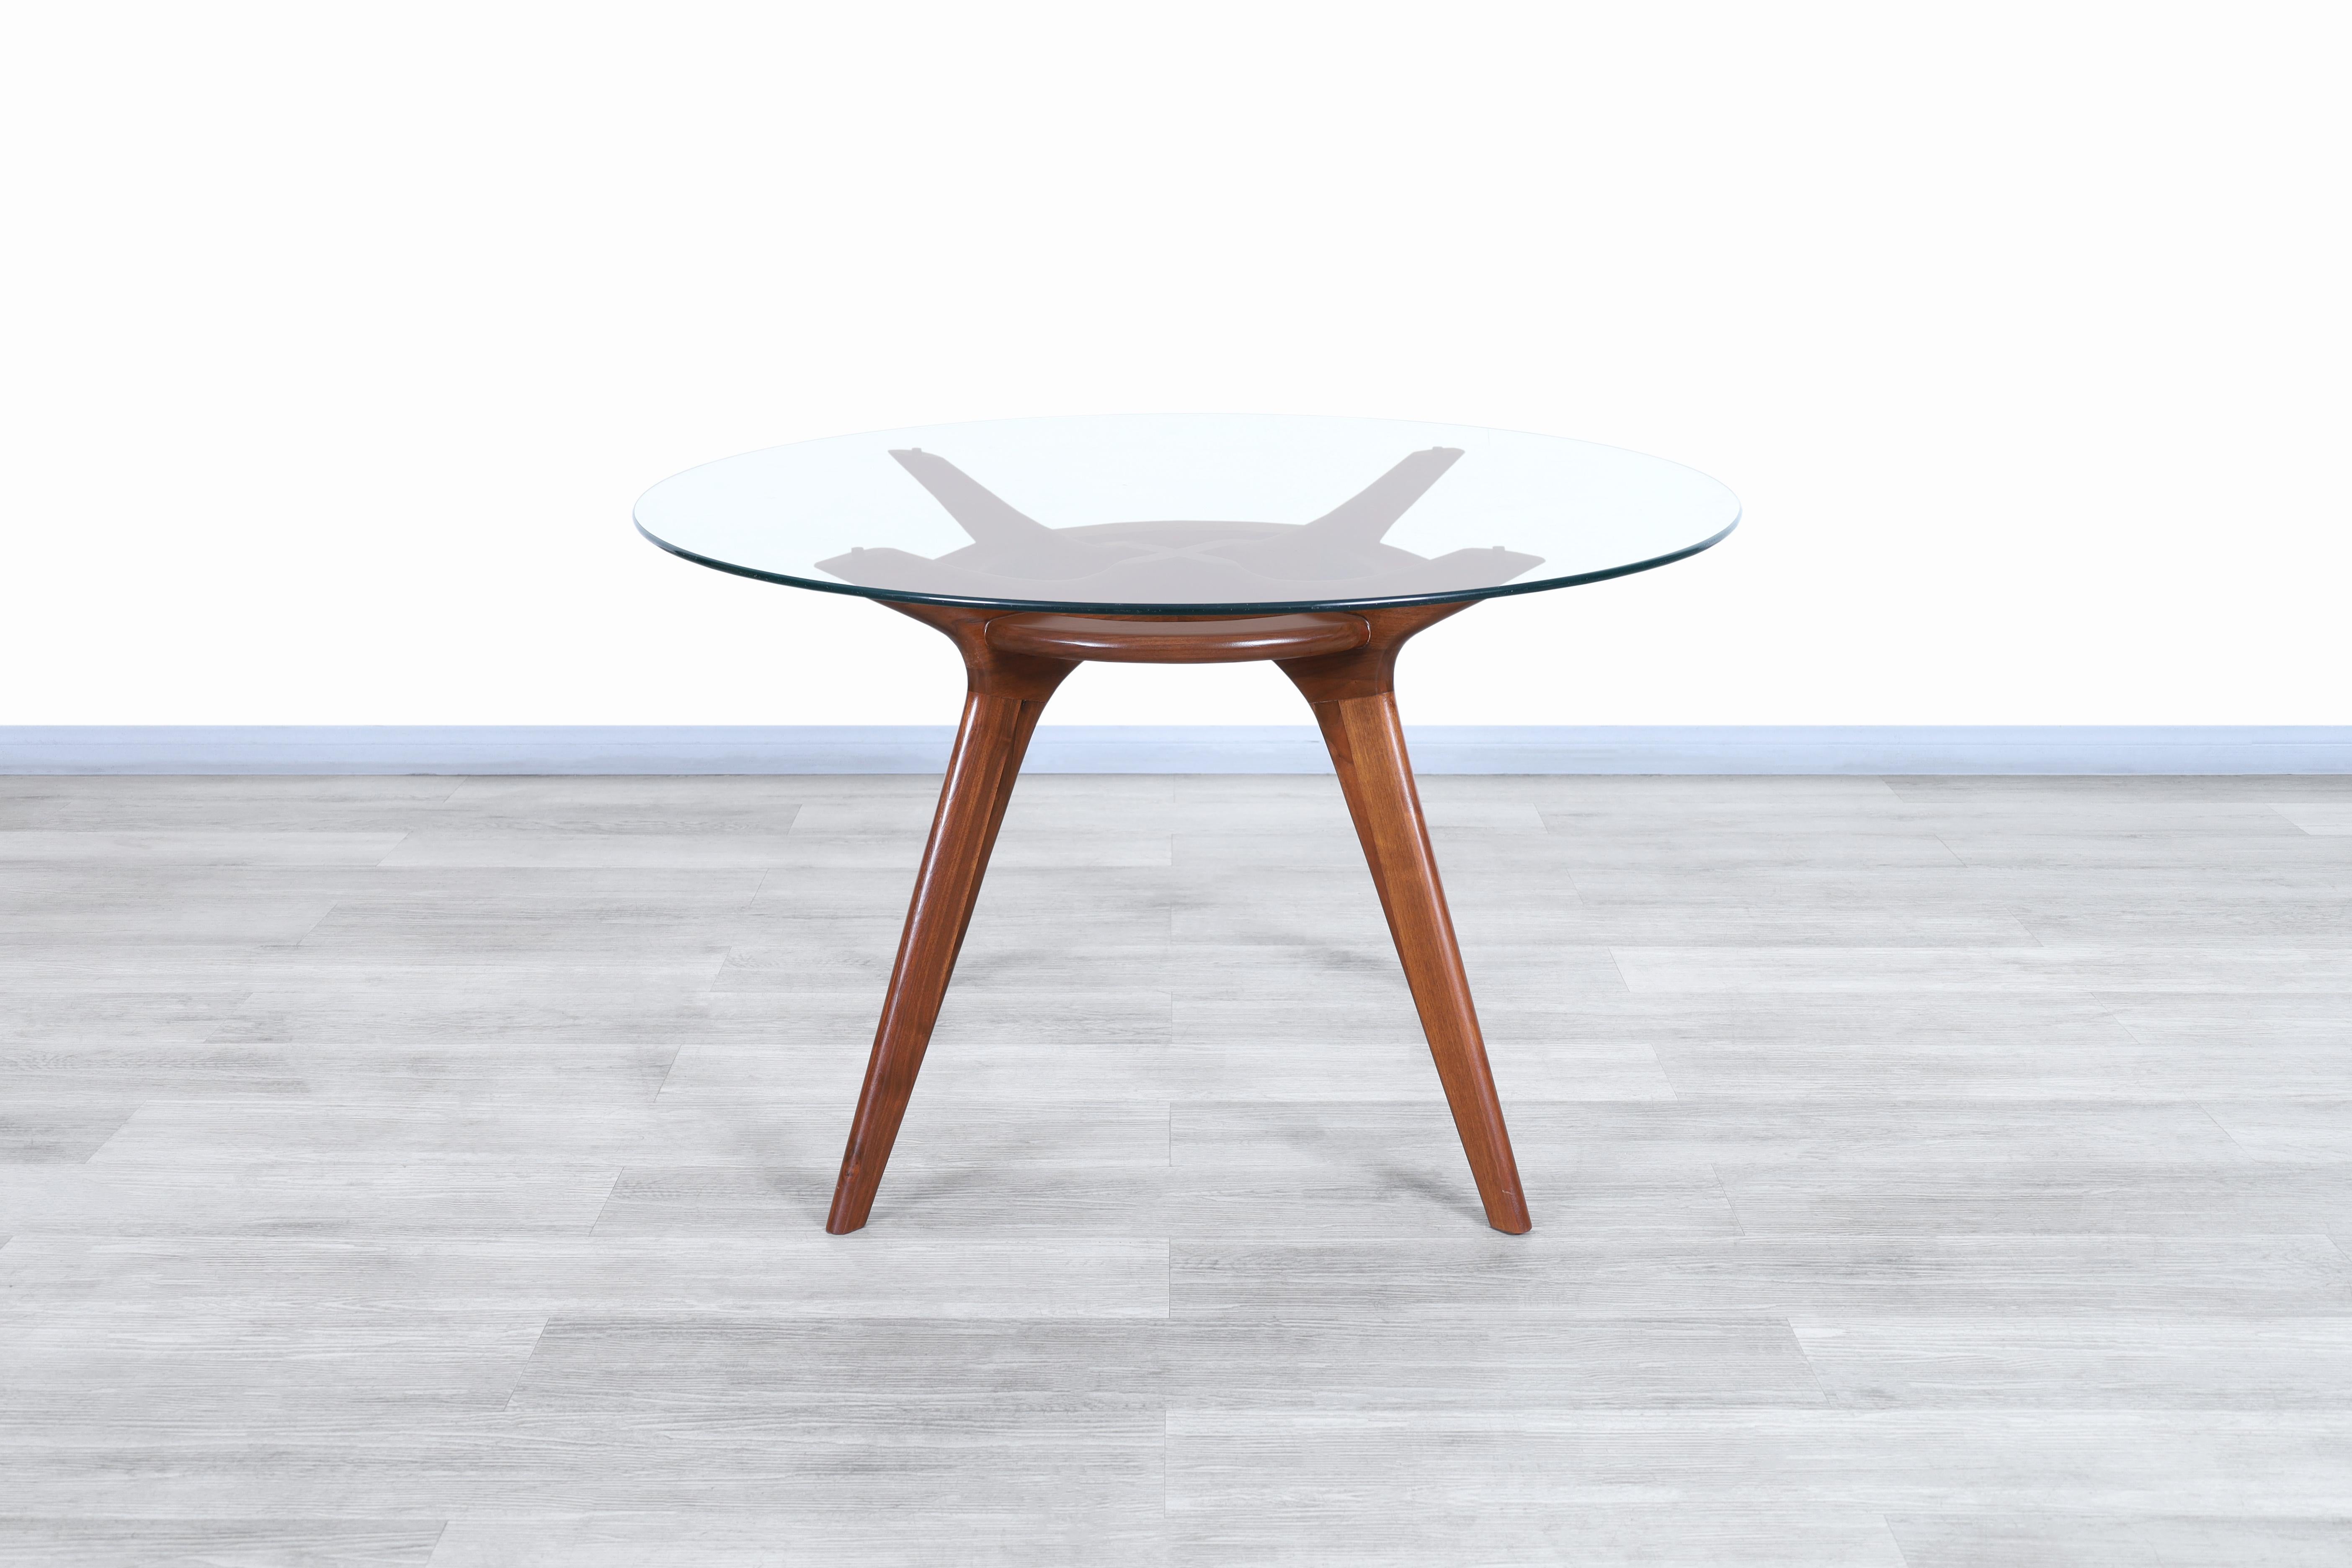 Schöner Esstisch aus Nussbaumholz, Modell 1135-T, entworfen von Adrian Pearsall für Craft Associates, Inc. in den Vereinigten Staaten, ca. 1960er Jahre. Dieser Tisch wurde aus hochwertigem Nussbaumholz gefertigt und zeichnet sich durch sein